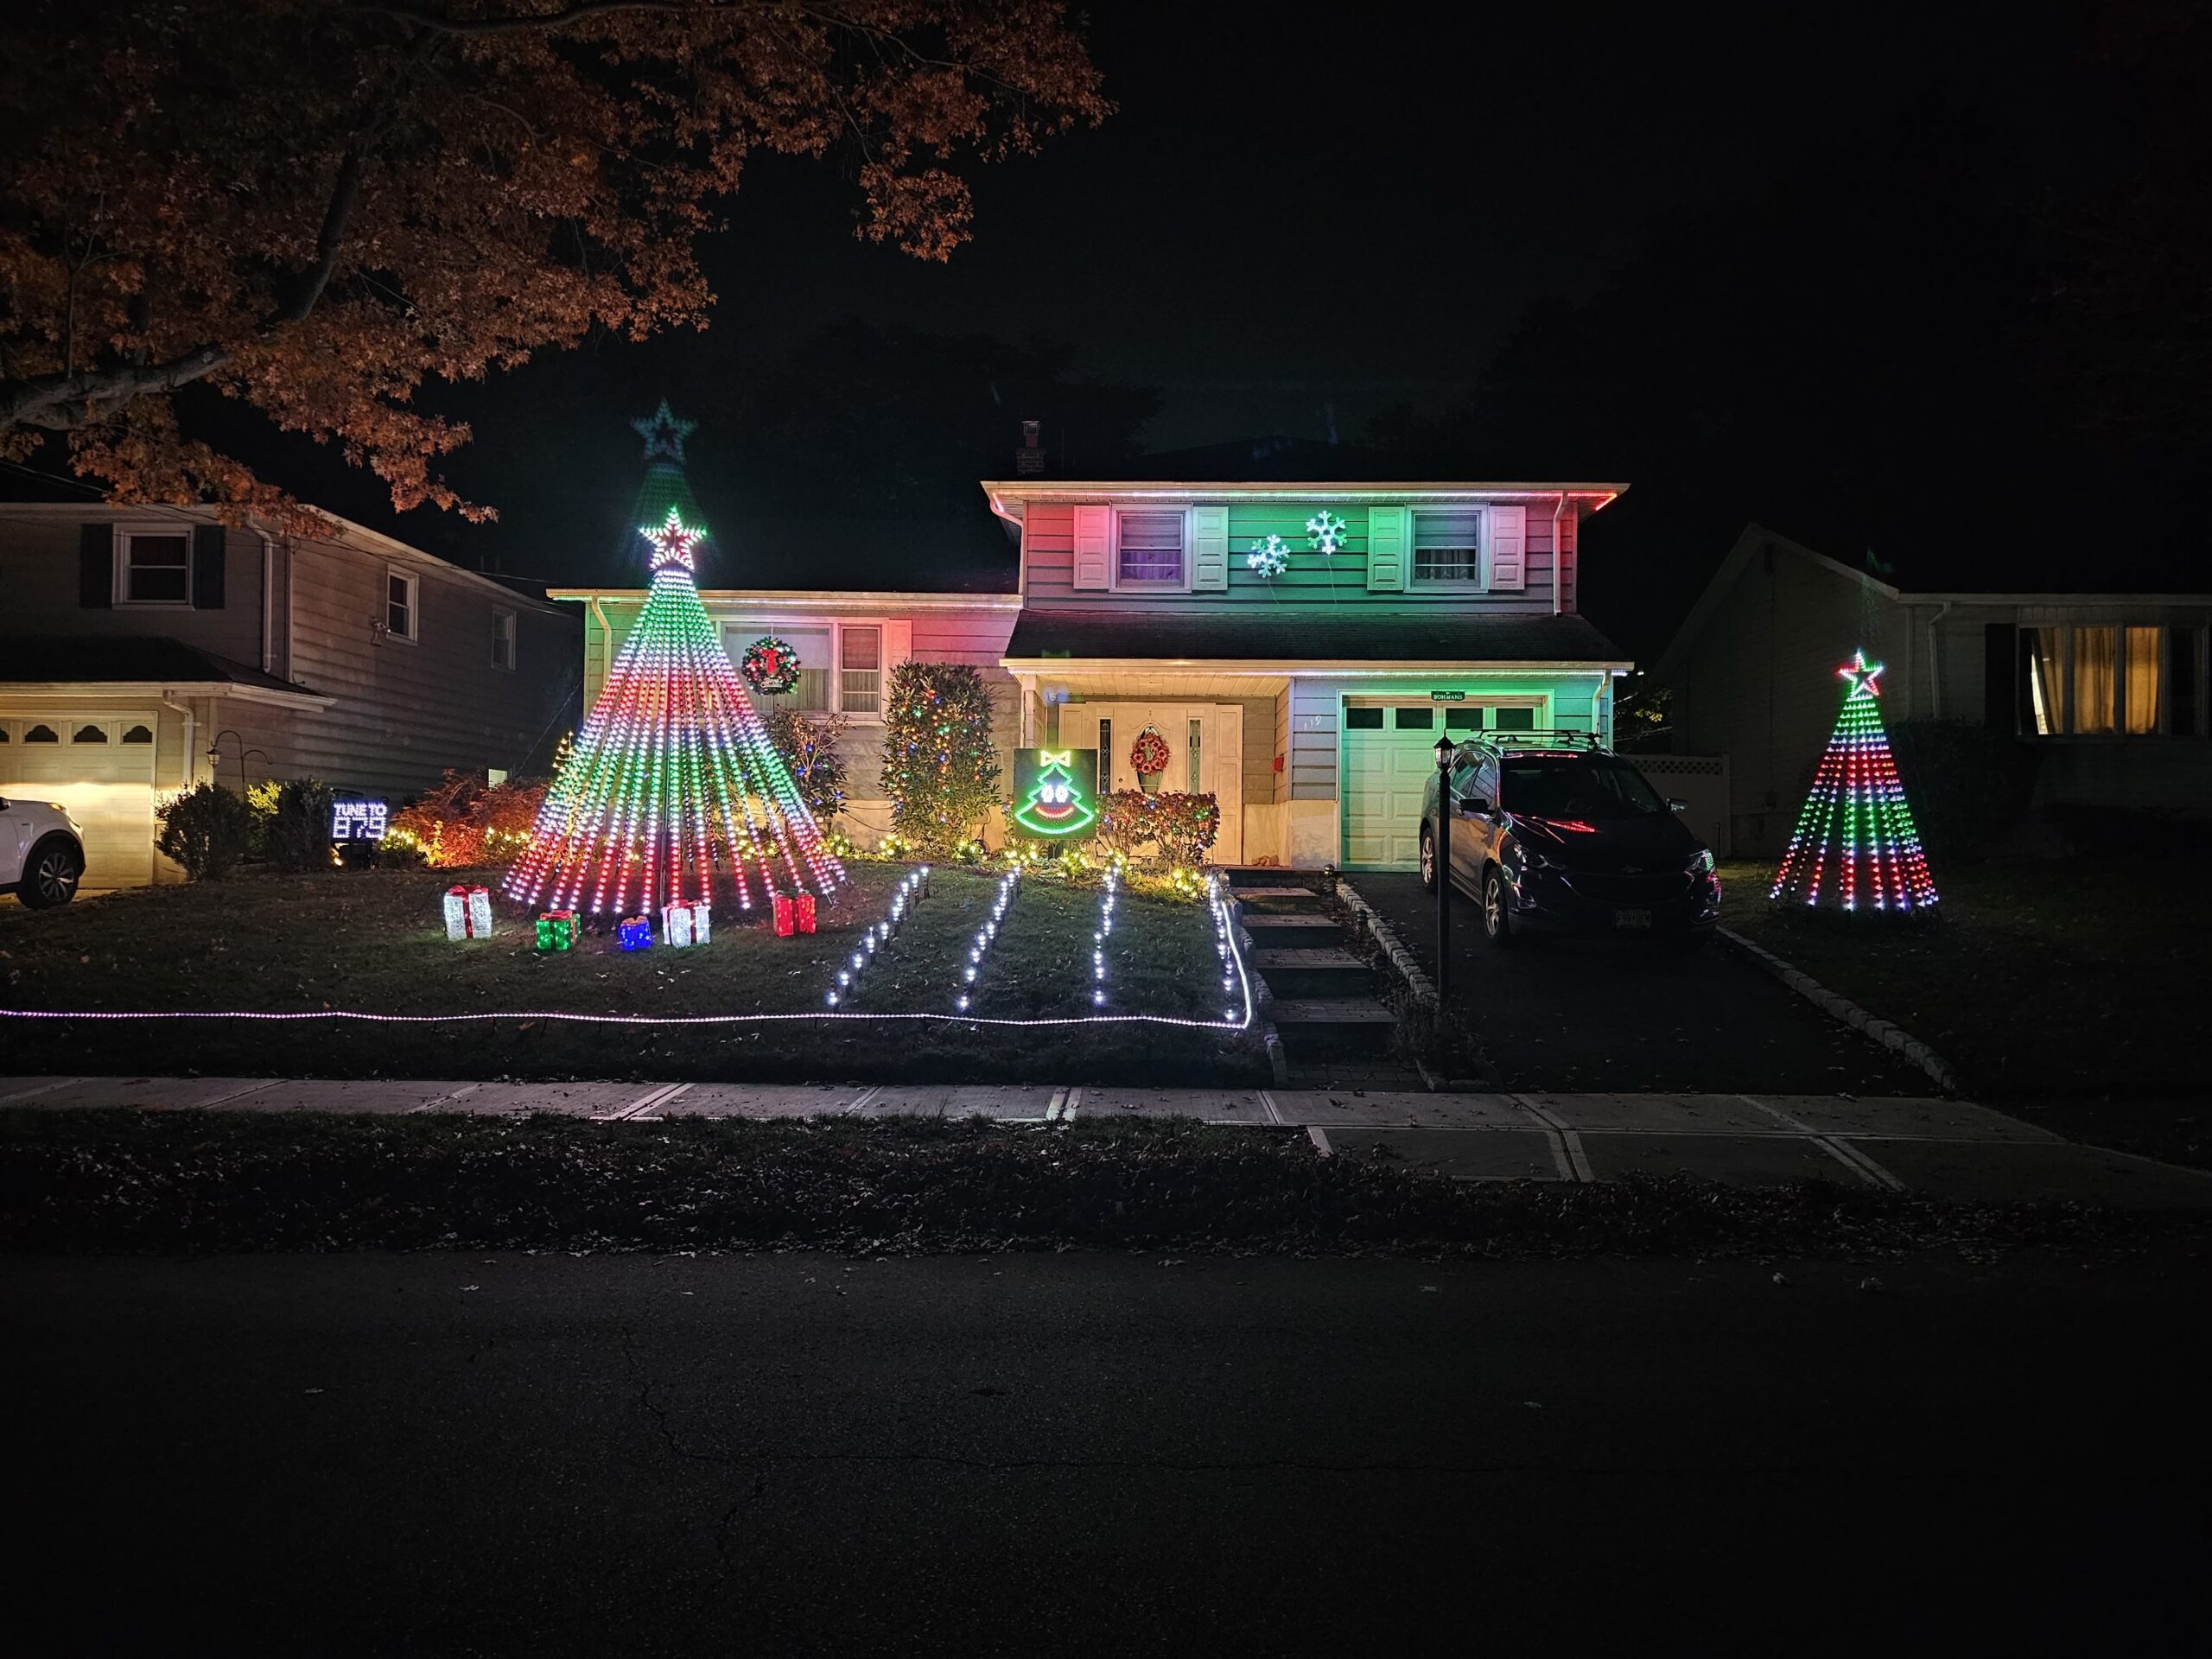 John's House of Christmas Lights in Bloomfield NJ